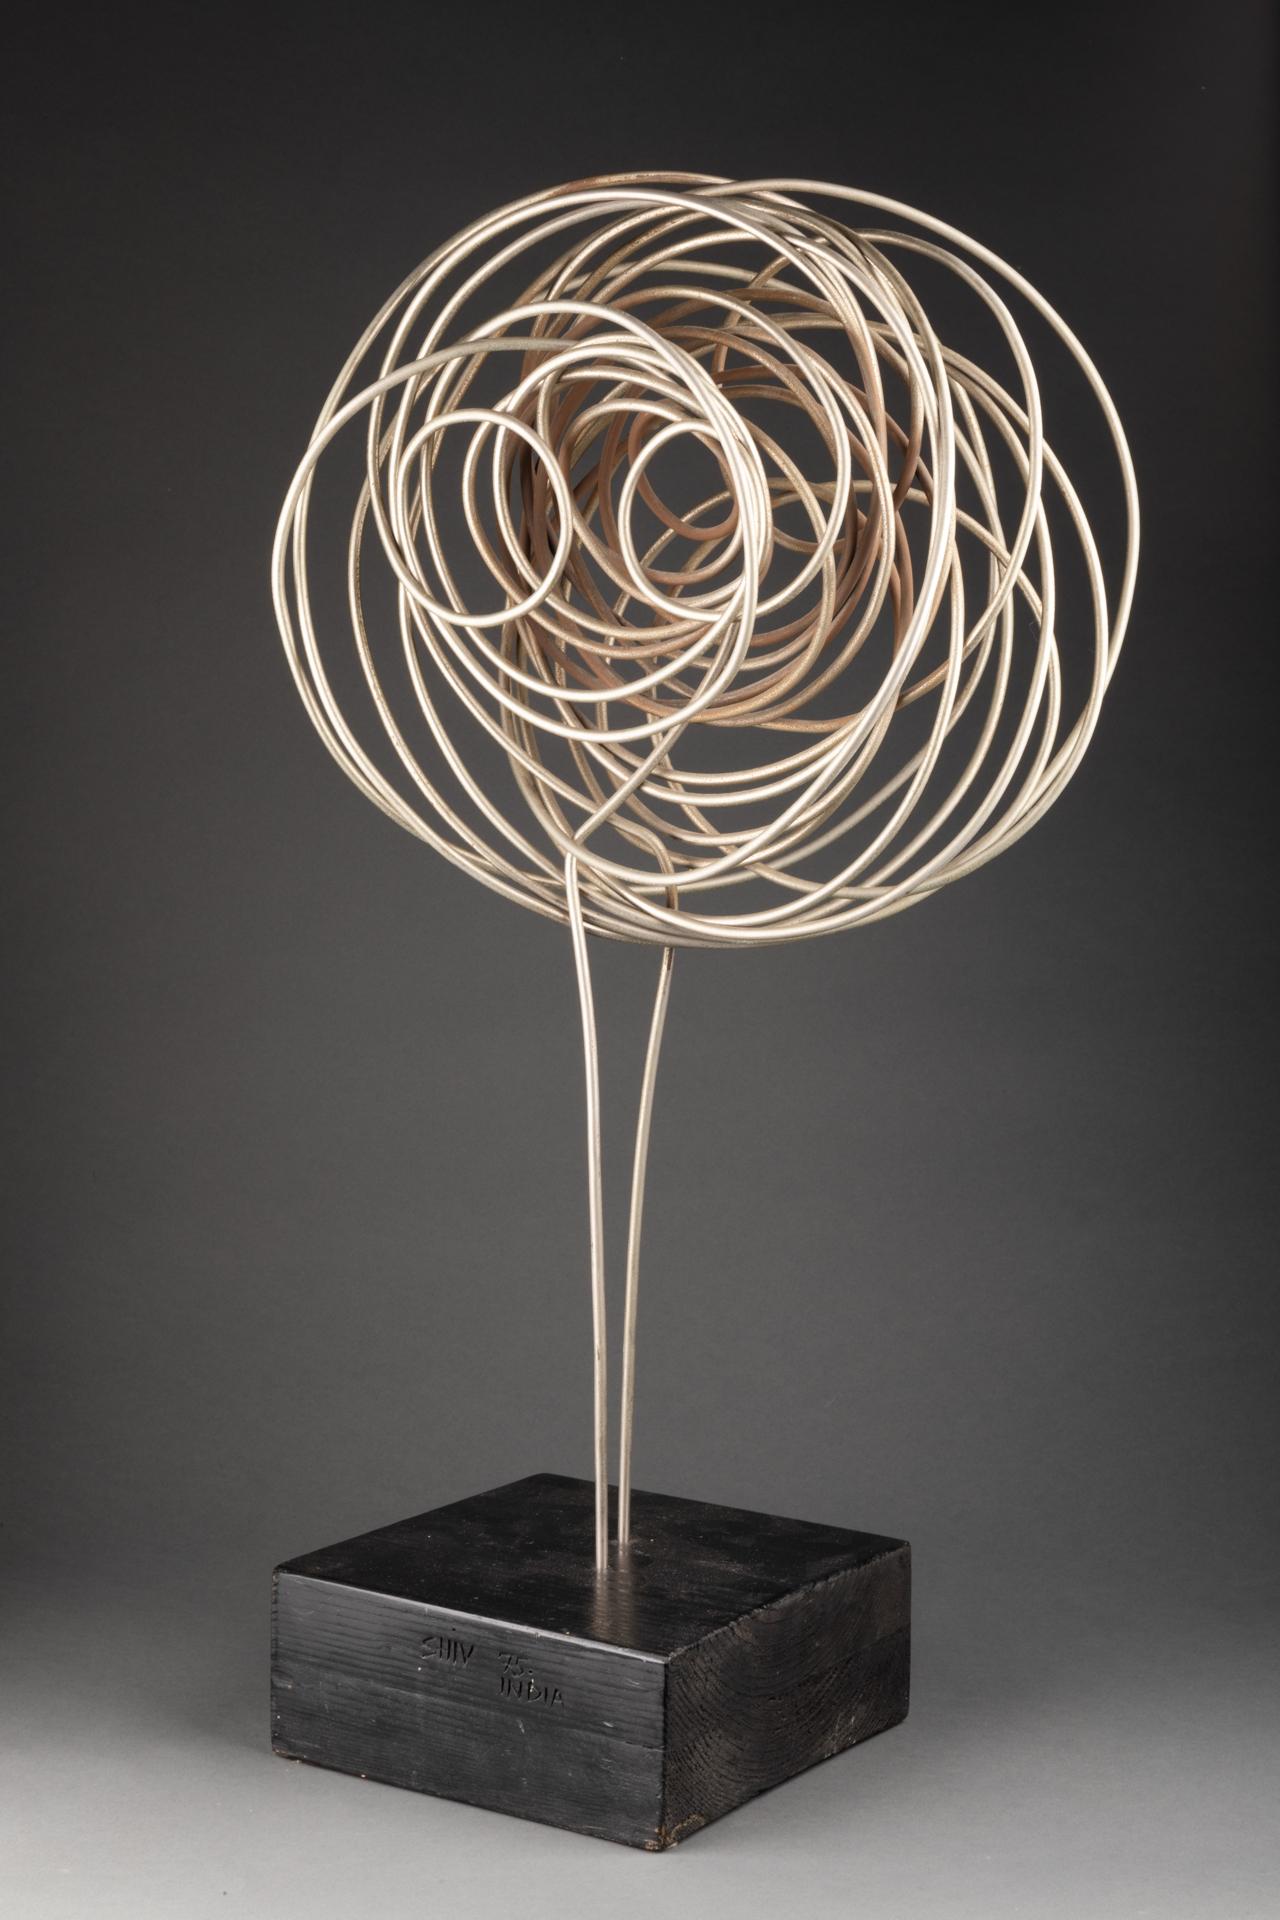 Shiv Singh (1938-2015)

Sculpture abstraite - 1975

Un seul fil de fer enroulés, monté sur une base carrée en bois noir. / Rolled up onepolished iron string on a wood massive base



Signé 